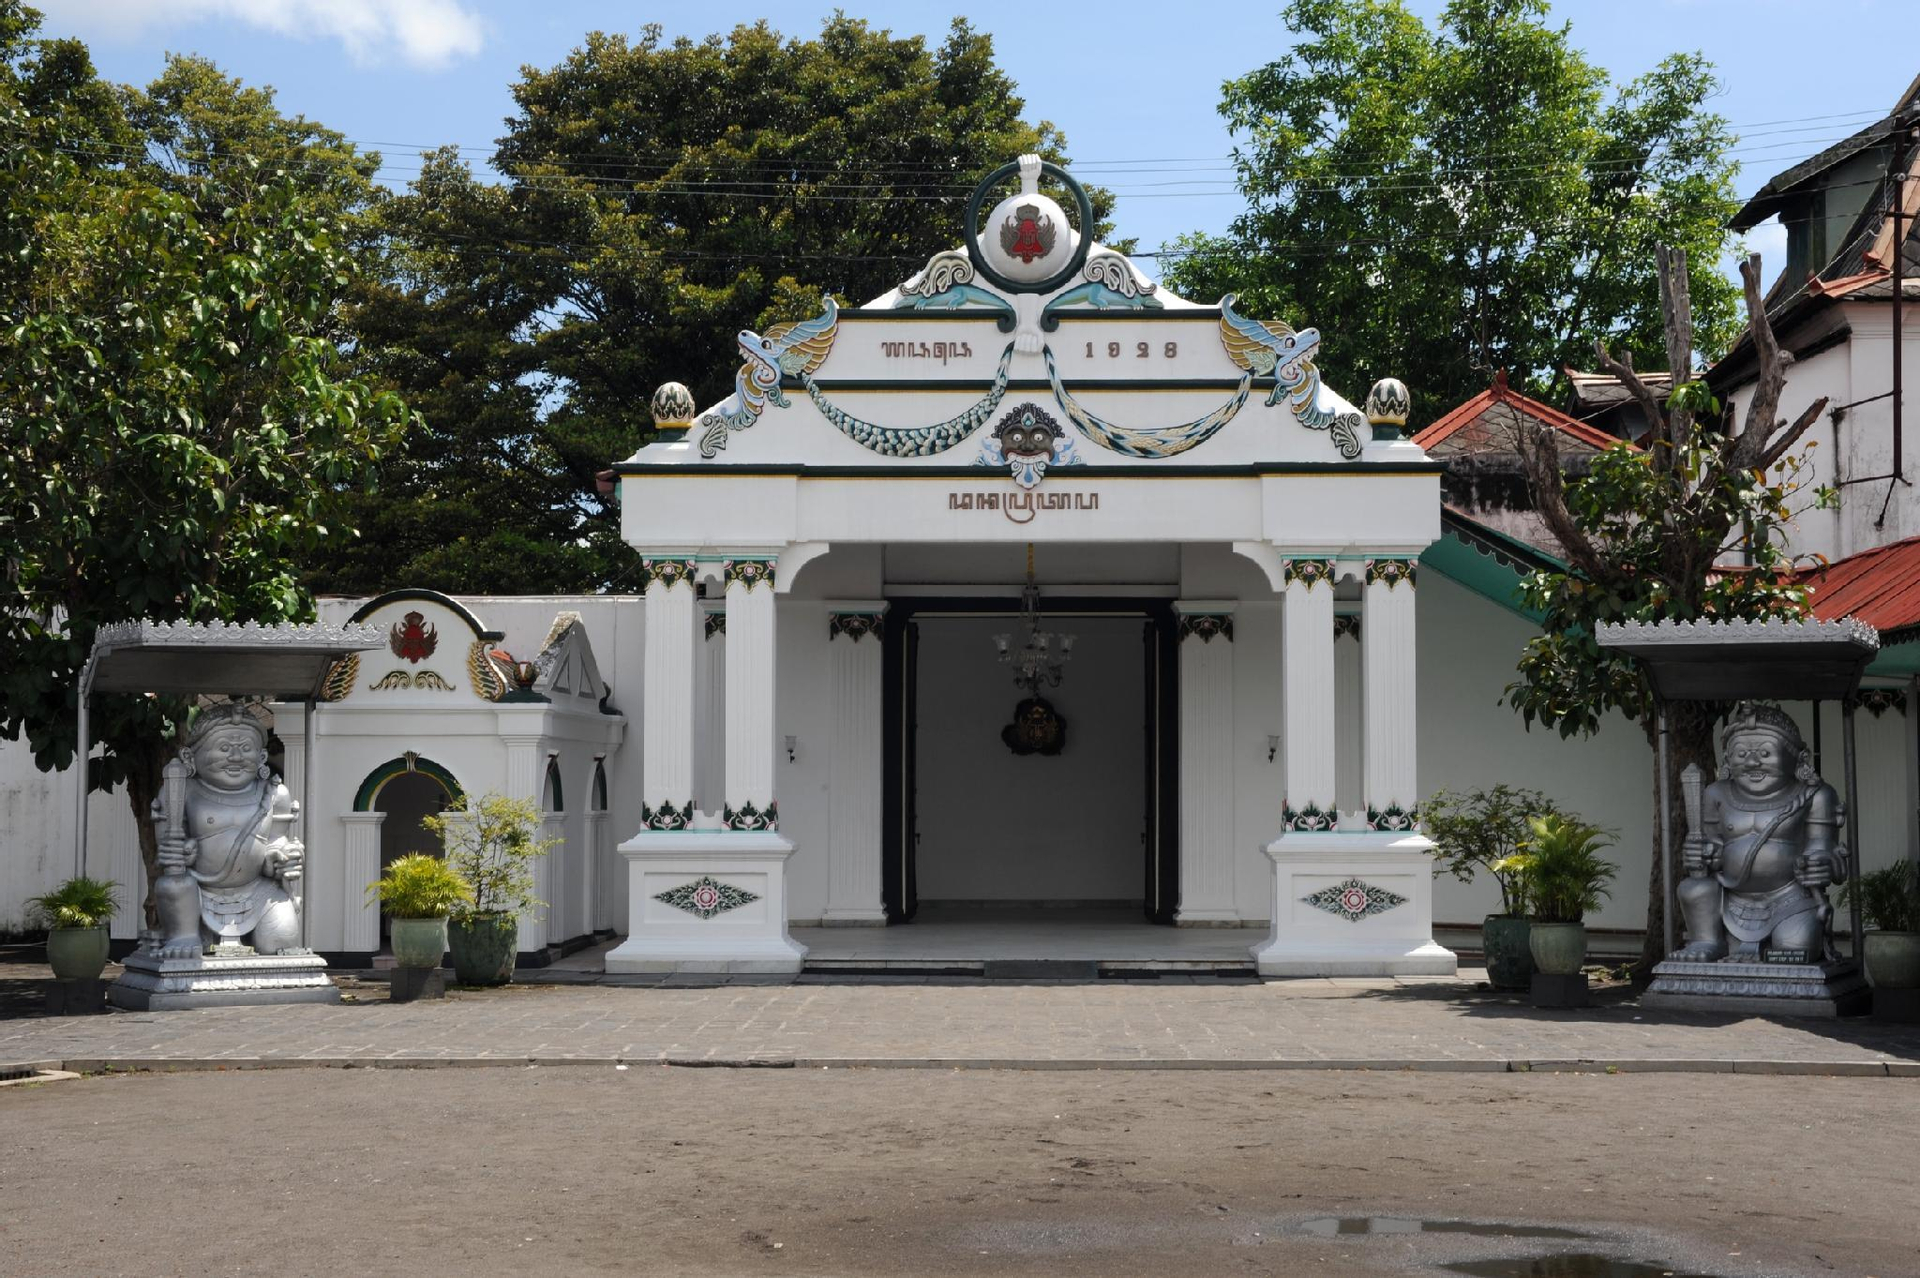 Exterior & Views 2, Hotel Kombokarno Malioboro, Yogyakarta